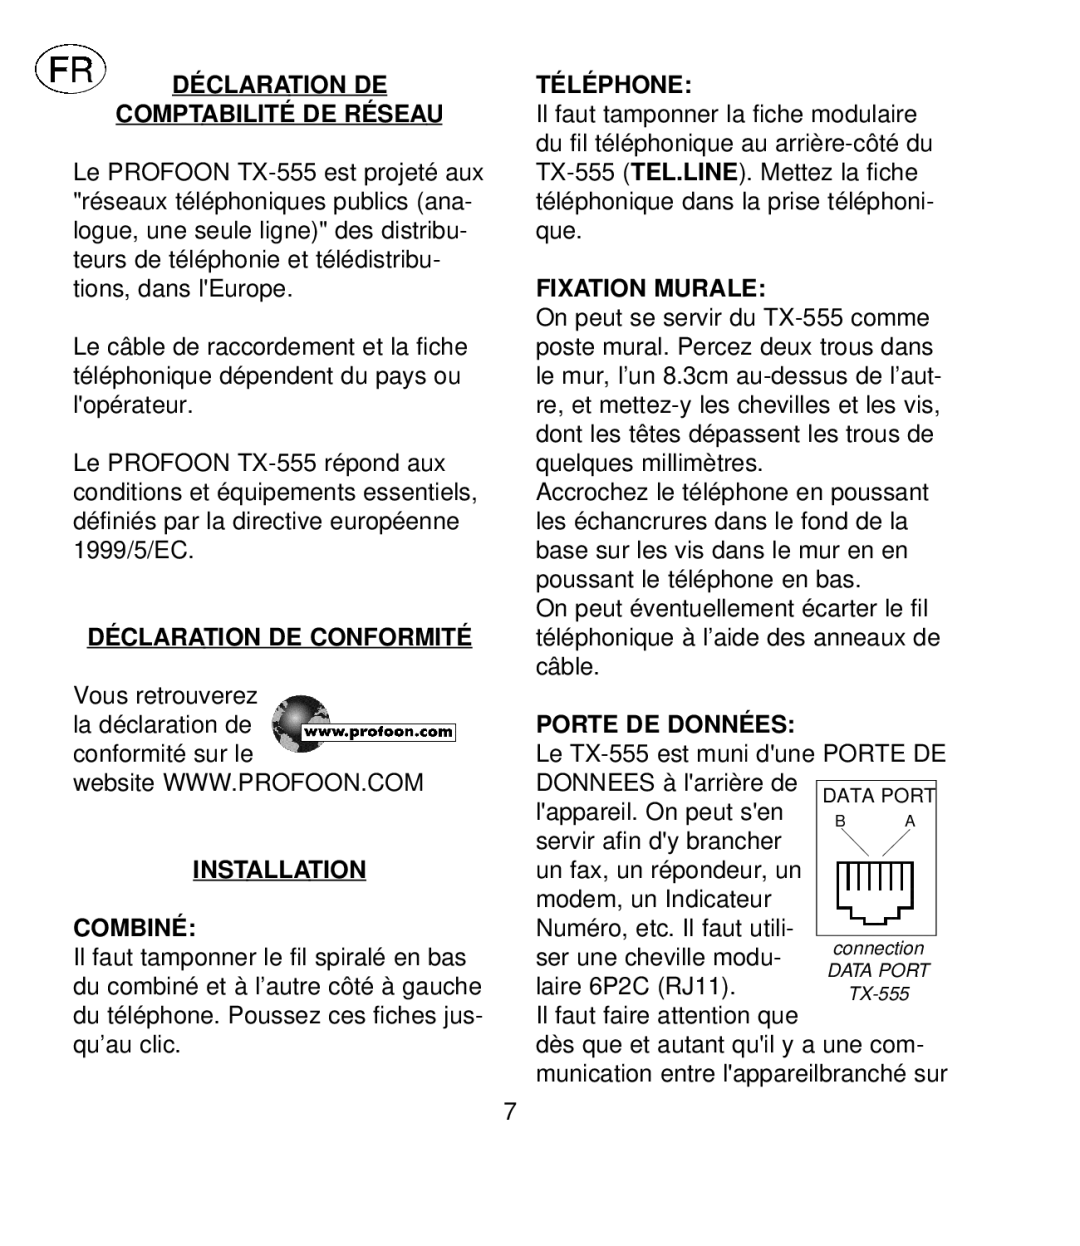 Profoon Telecommunicatie TX-555 manual Comptabilité De Résea U, Déclara Tion De Conformité, Installation Combiné, Téléphone 